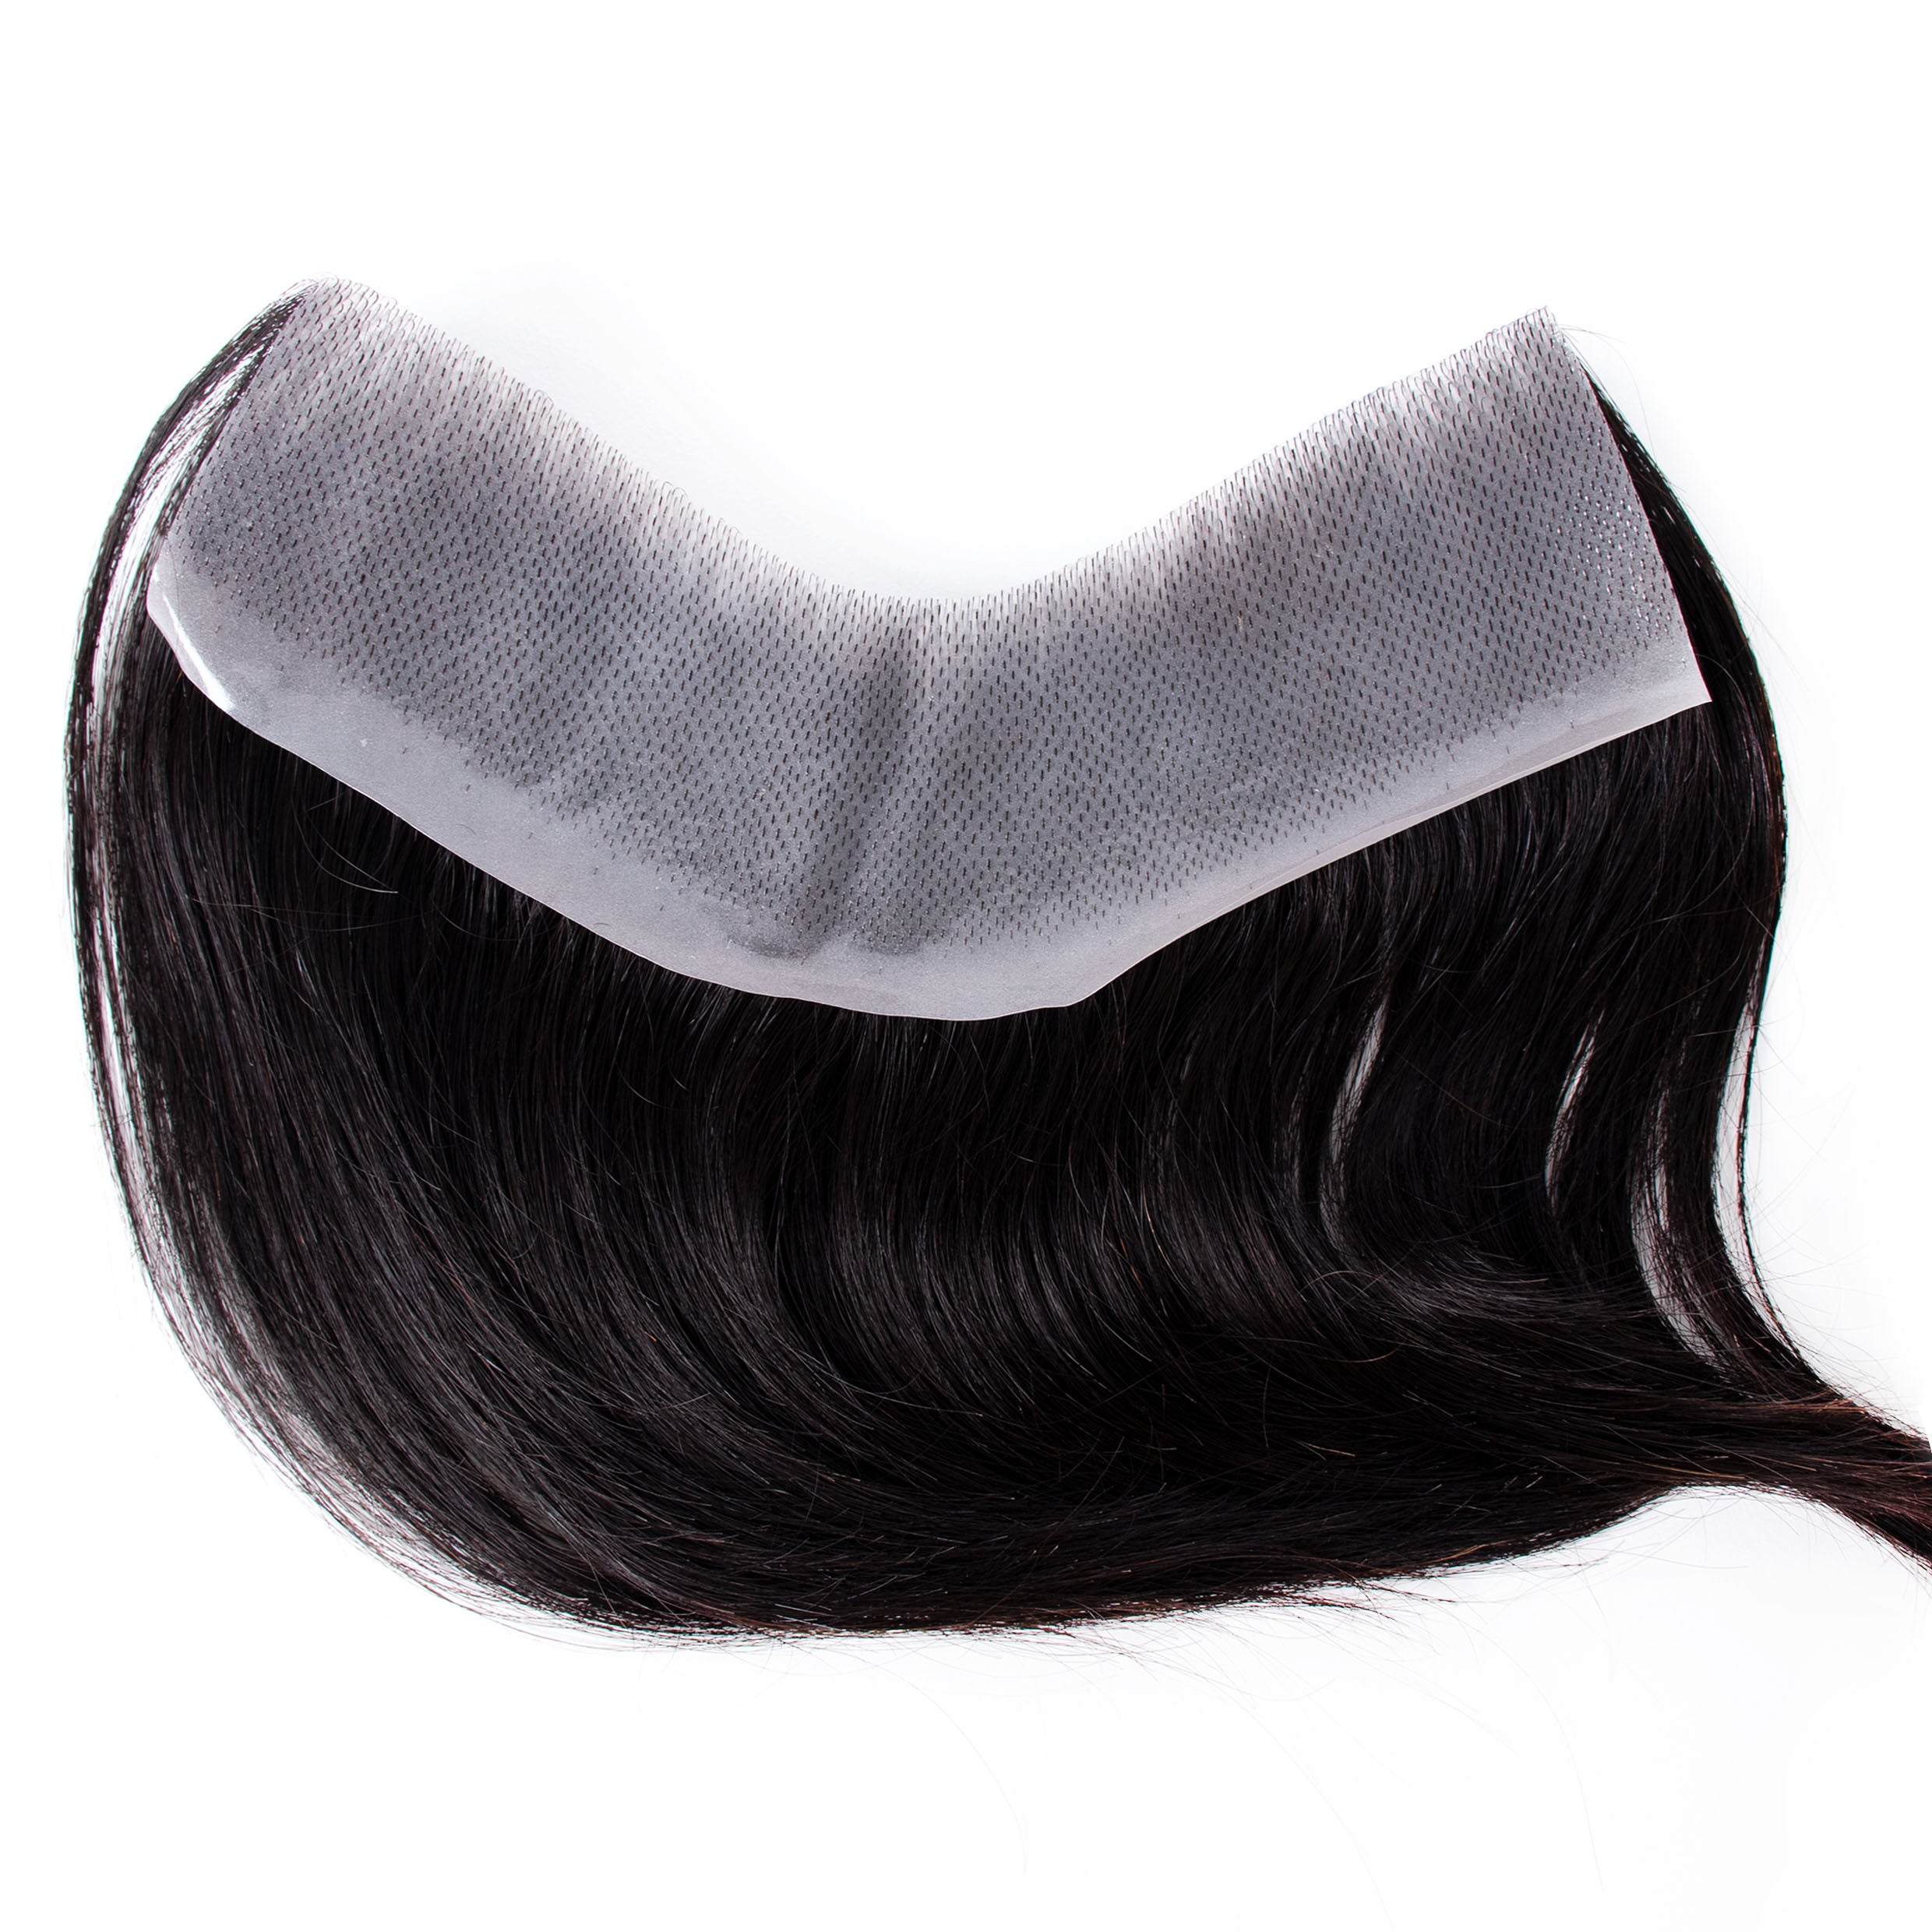 قطع شعر أمامية للرجال من GEXWIGS خط شعر طبيعي 0.08 مللي متر